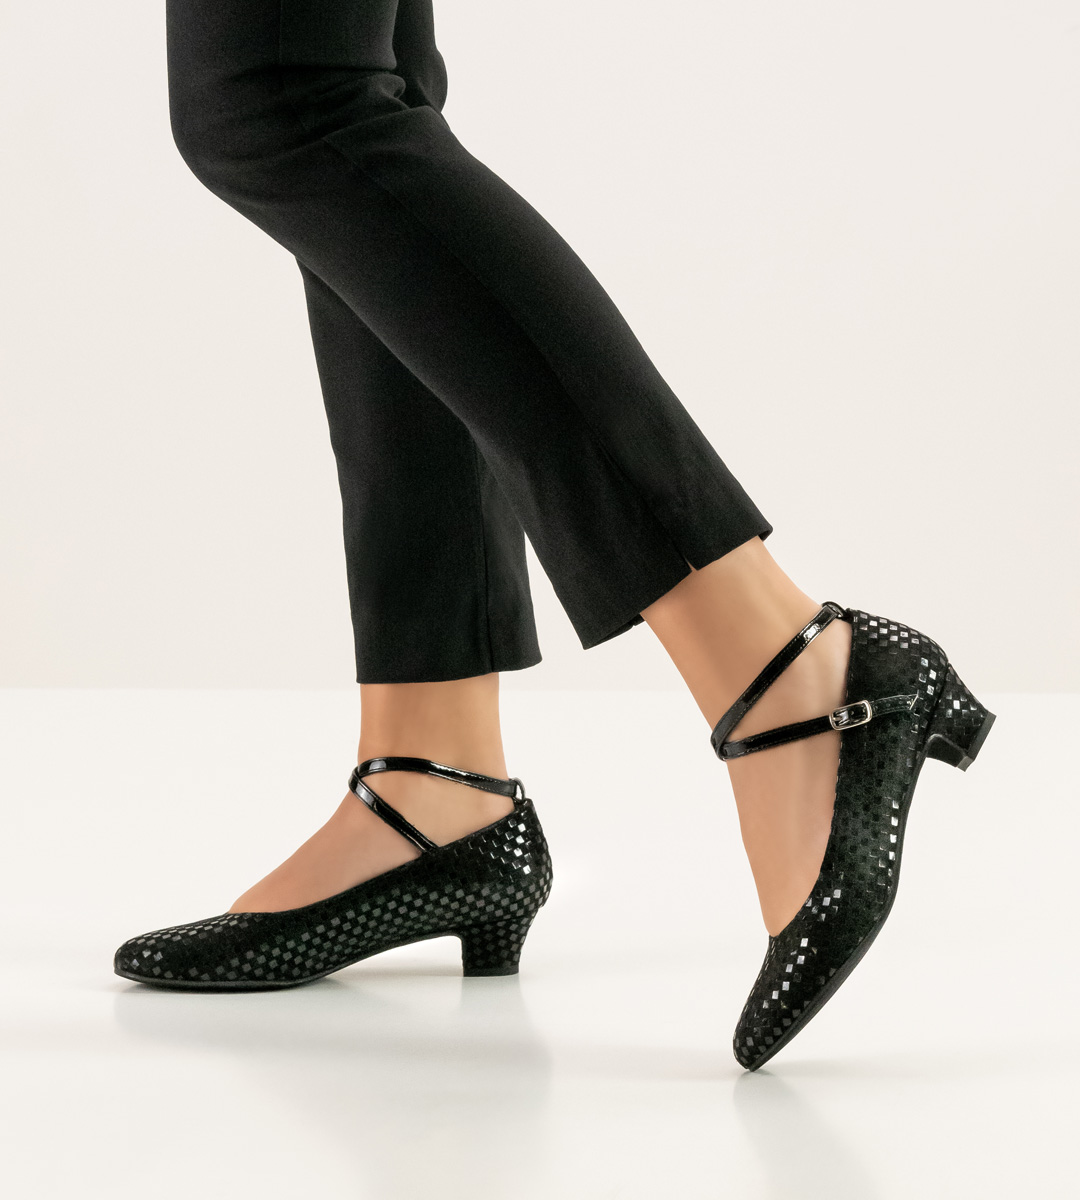 Chaussures de danse fermées pour femmes de Werner Kern avec un talon de 3,4 cm